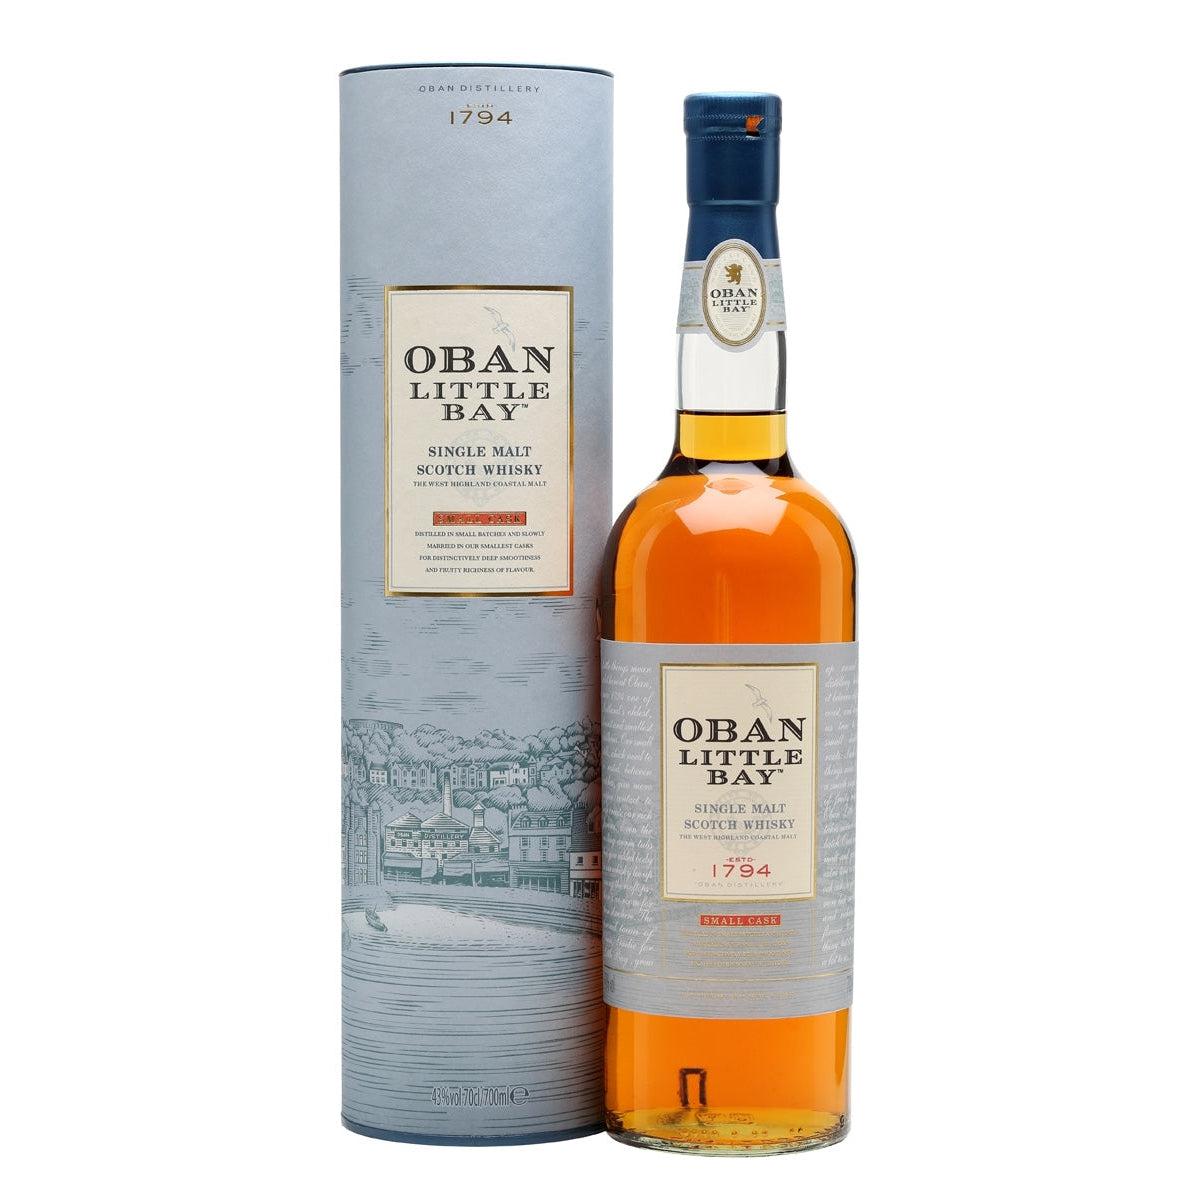 Oban Little Bay Single Malt Scotch Whisky Small Cask